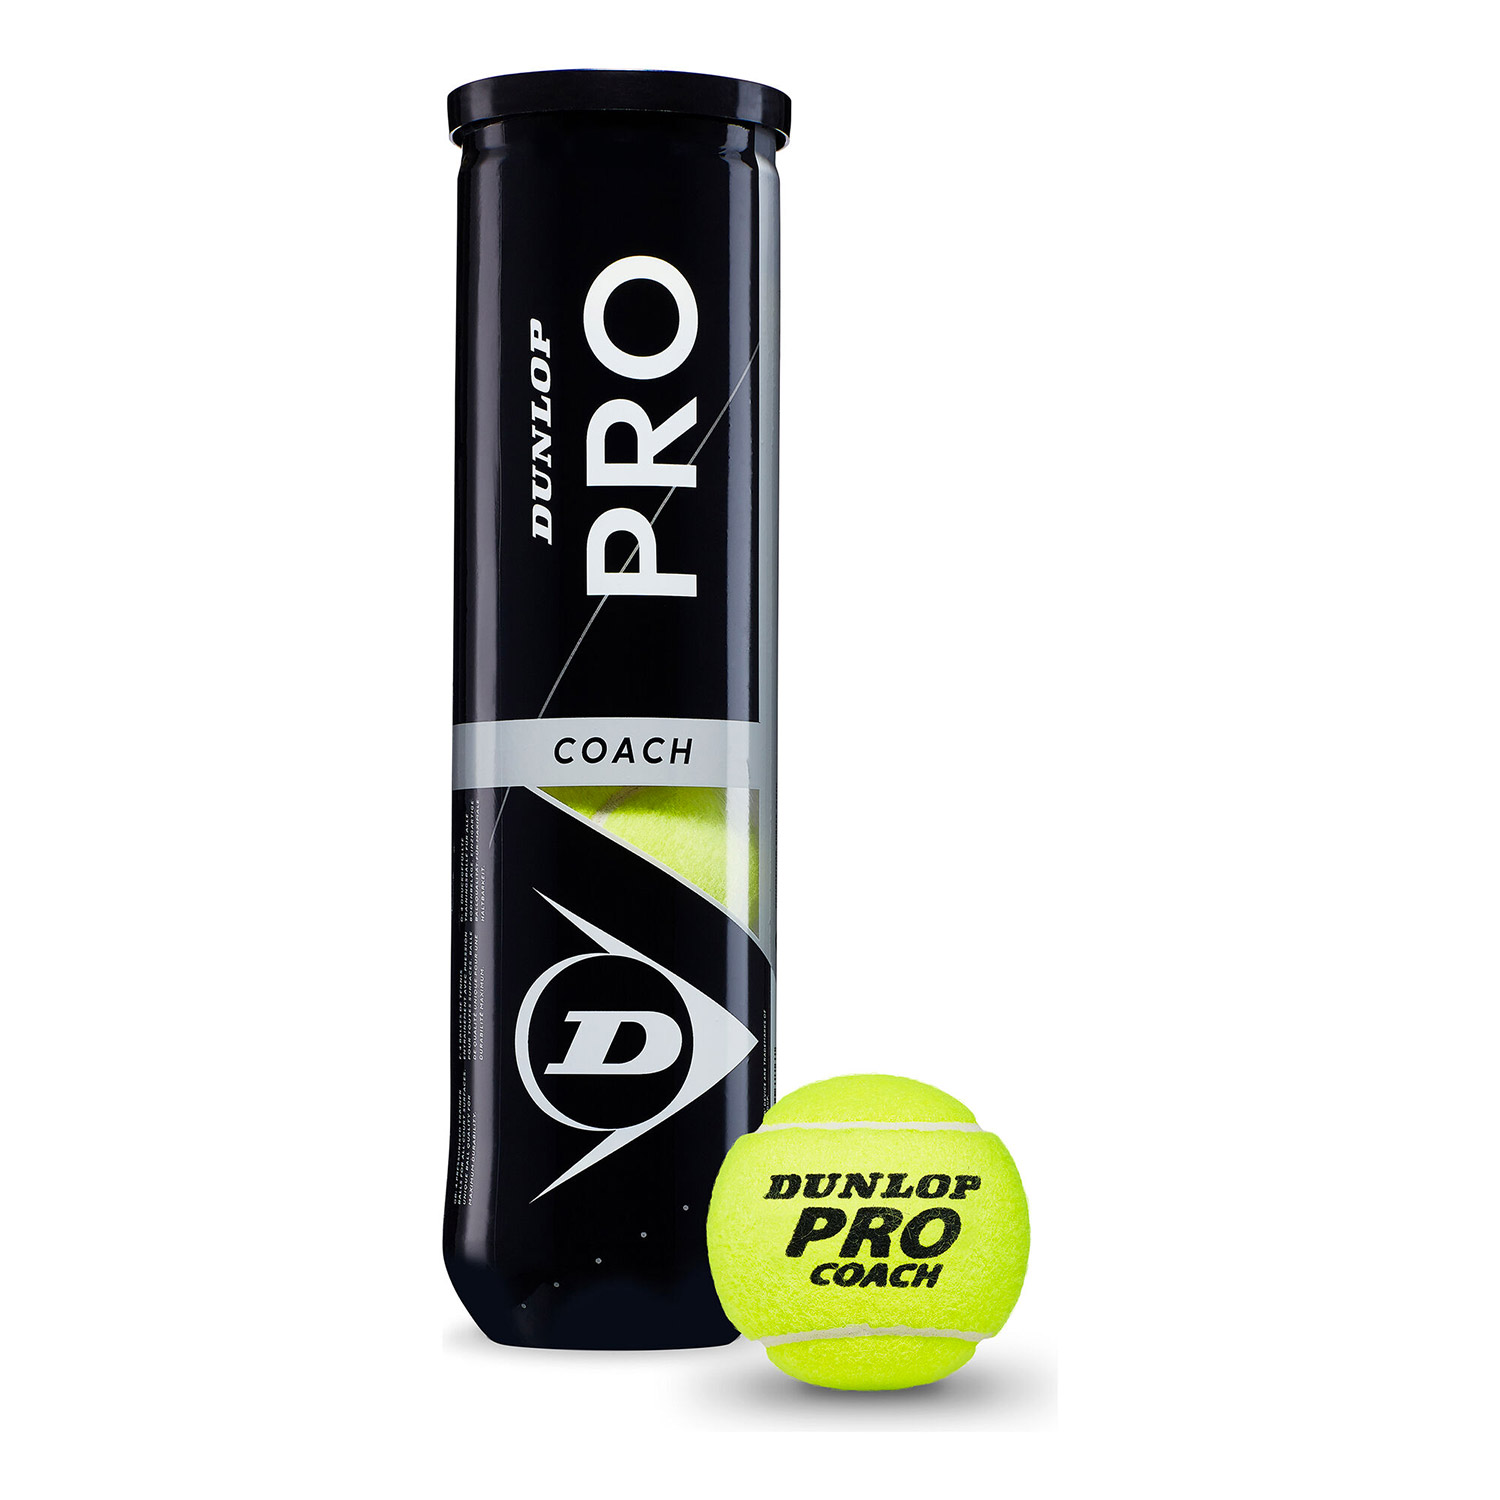 Dunlop Pro Coach - 4 Ball Can